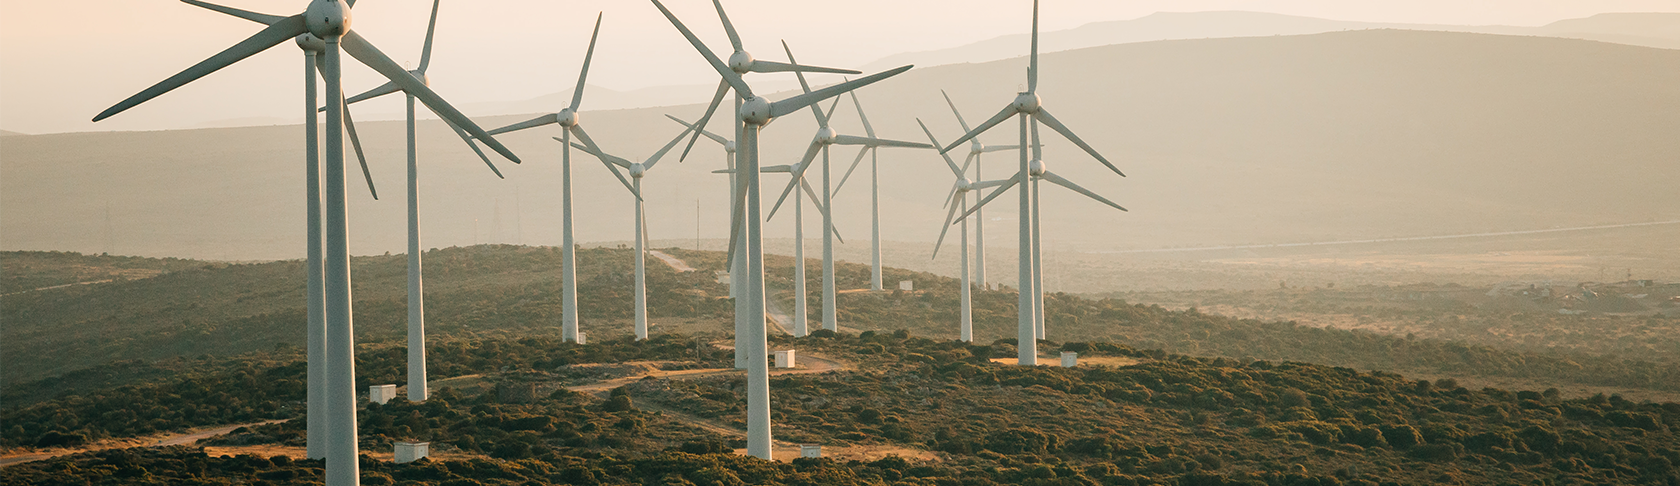 Mehrere weisse Windkraftanlagen in grüner Landschaft. 